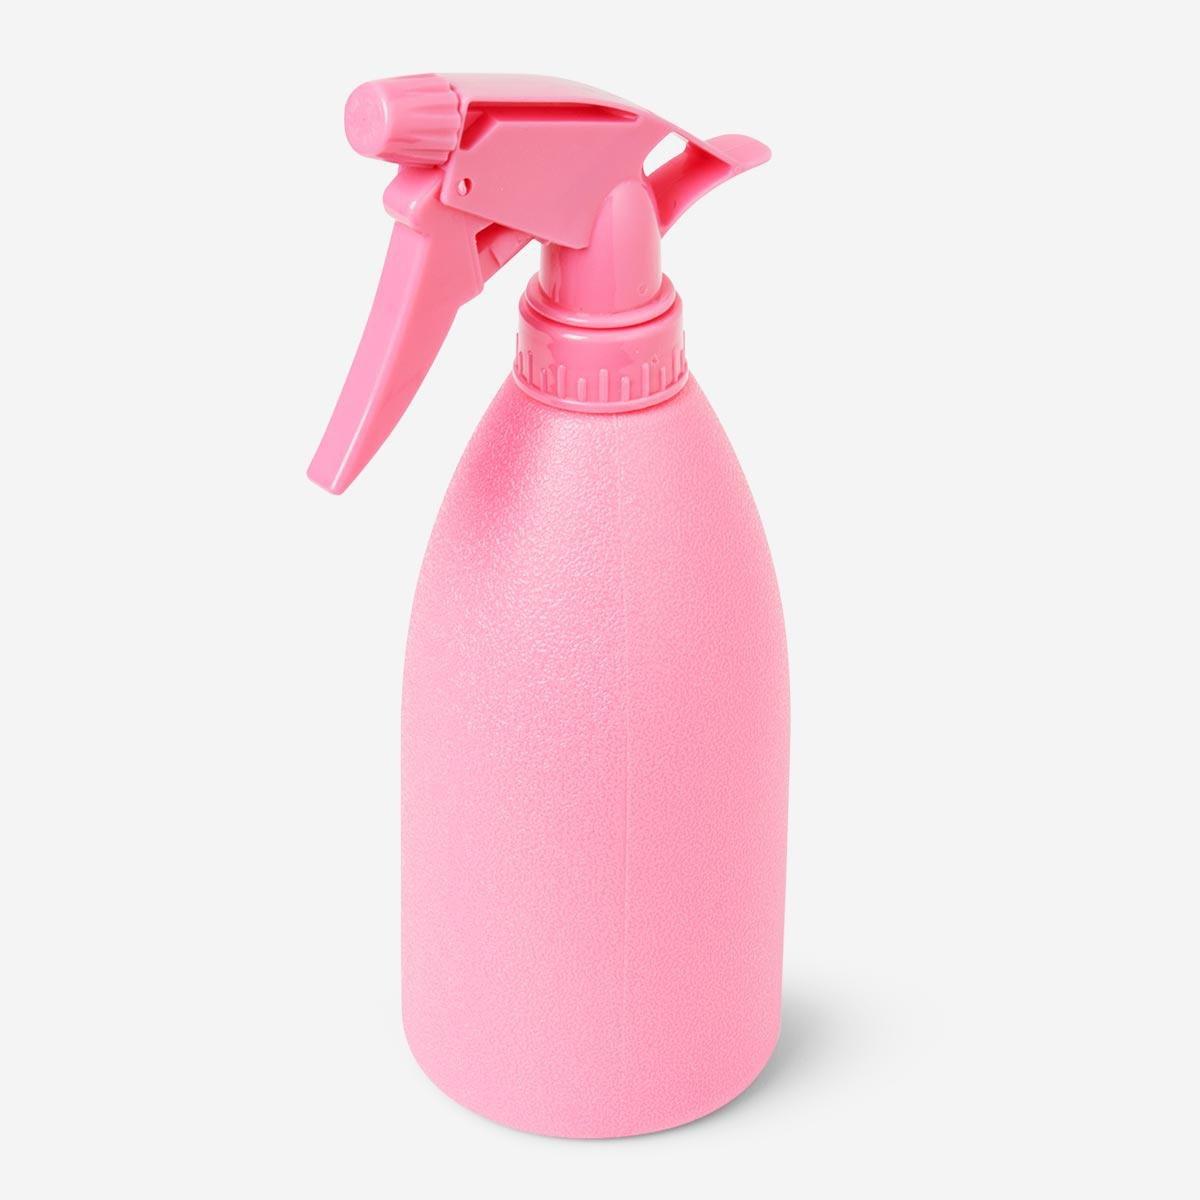 Pink mist spray bottle